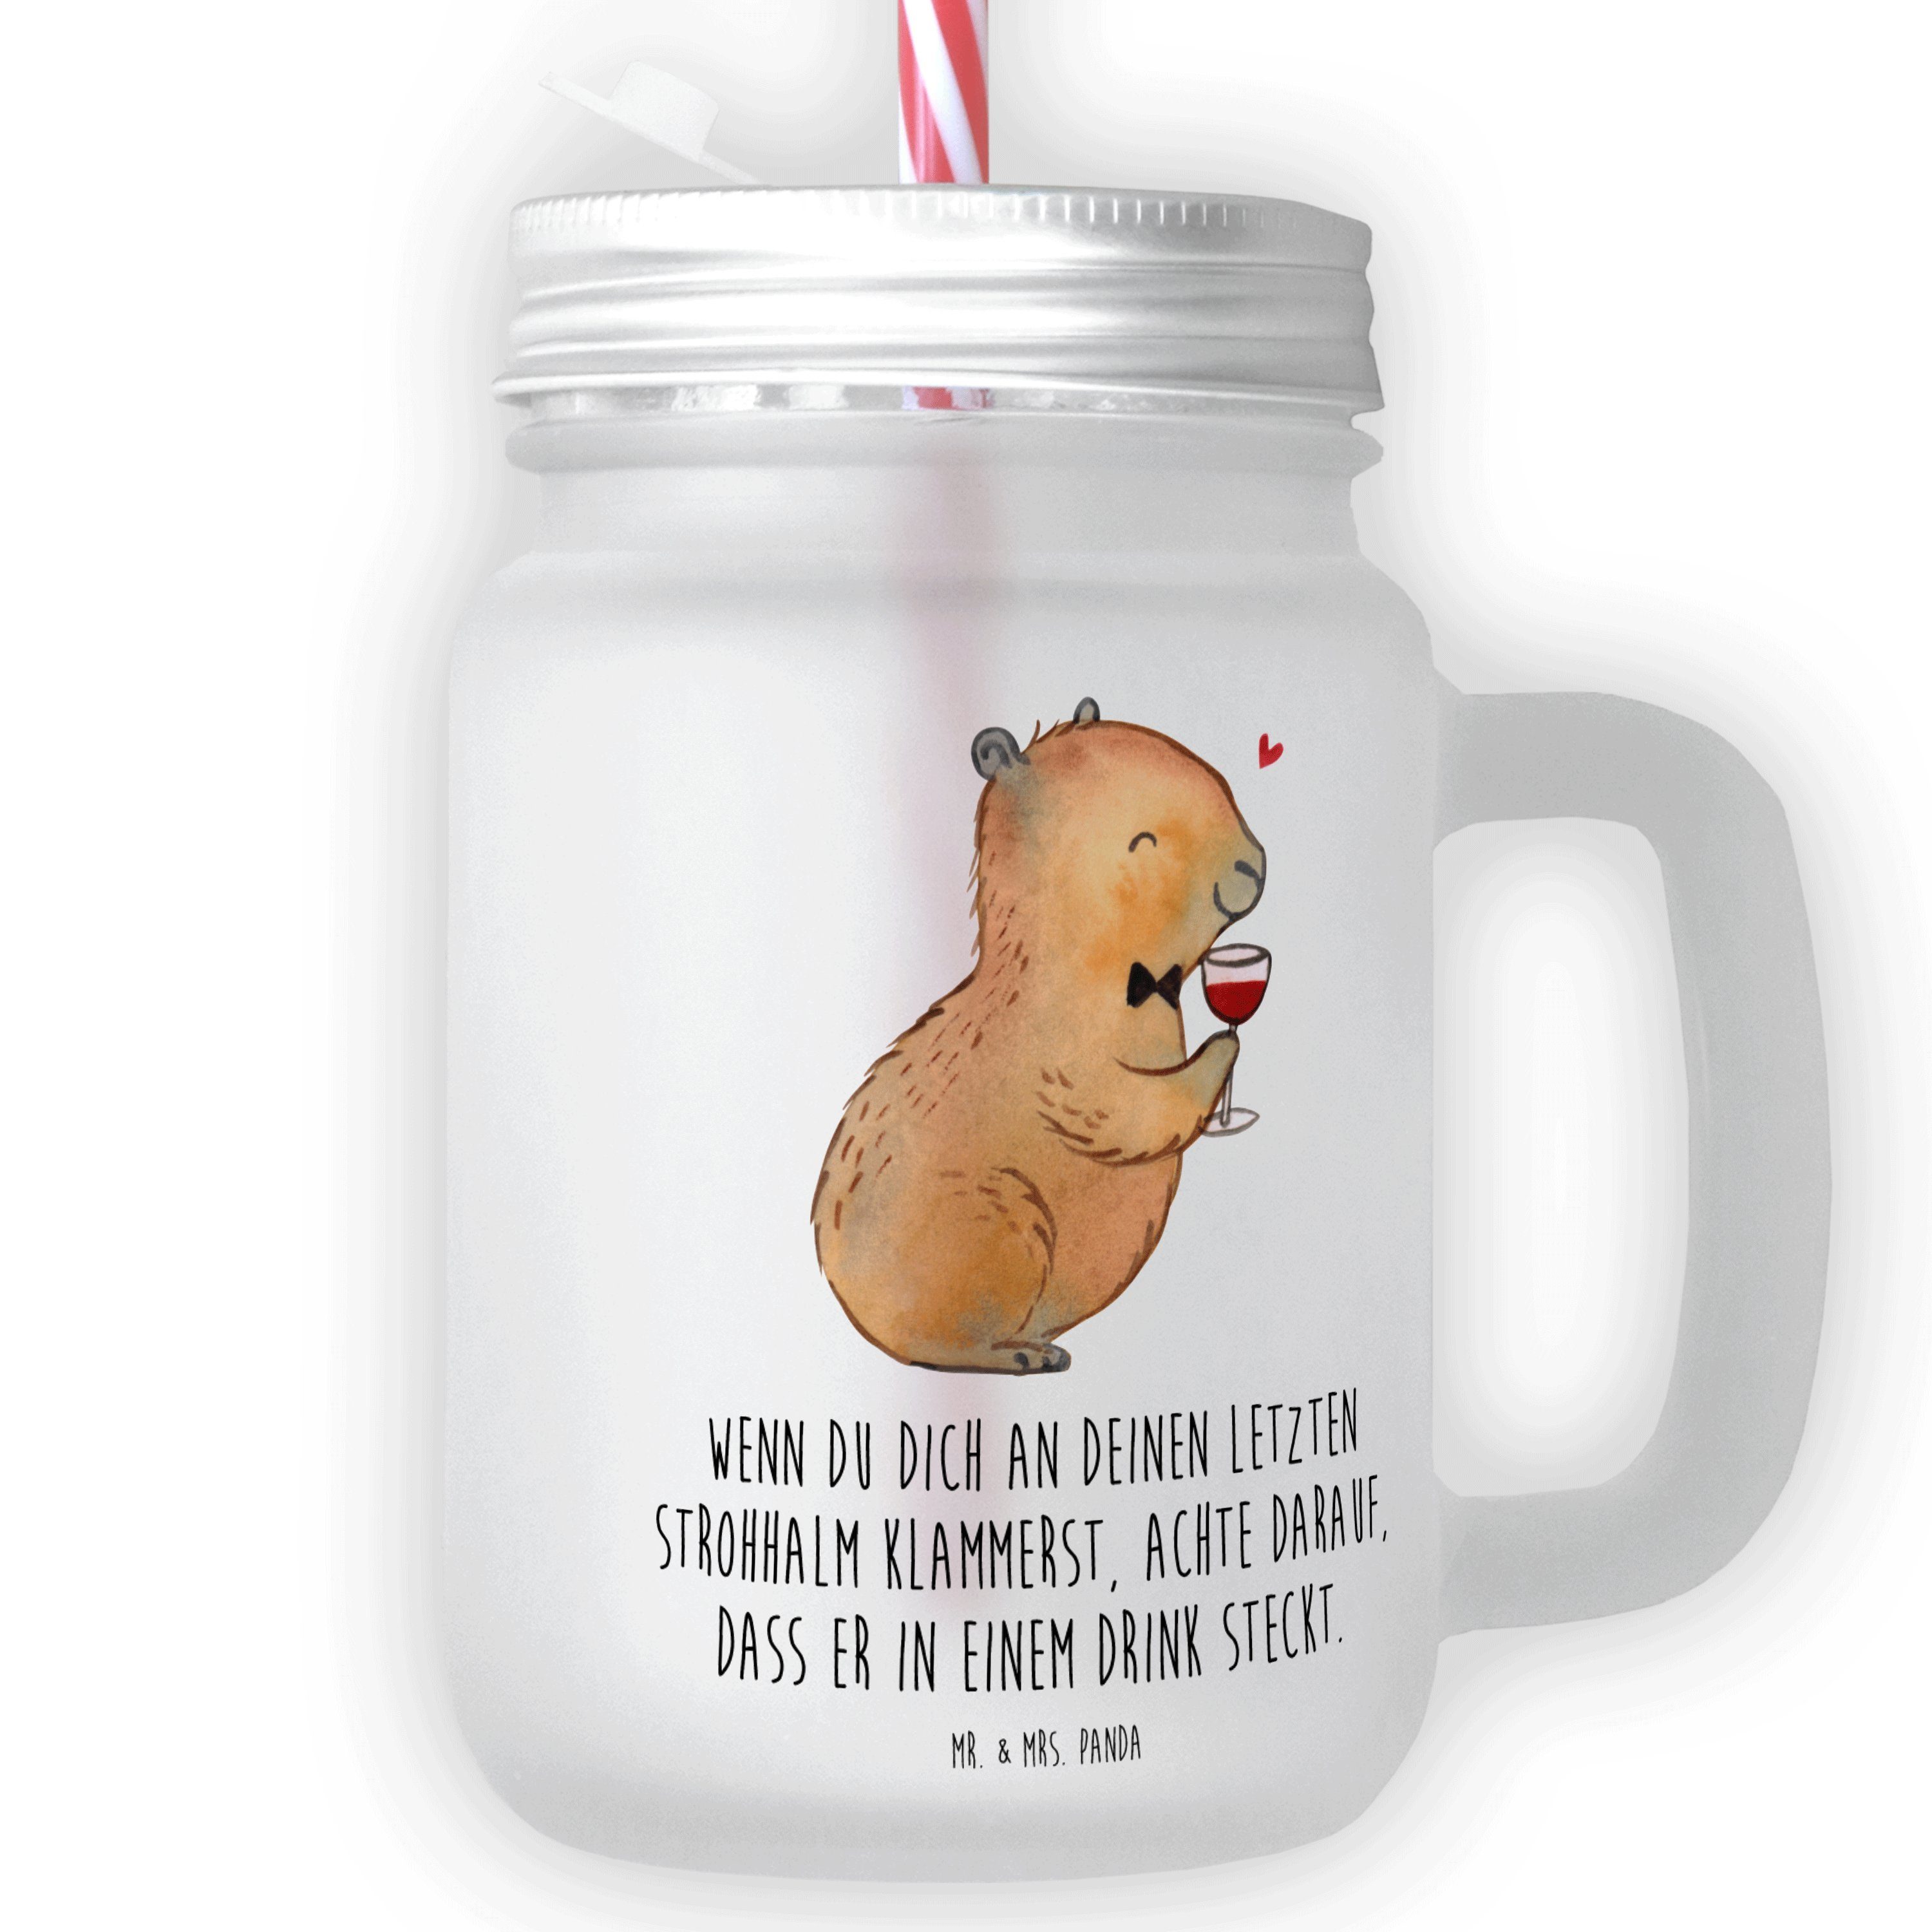 Mr. & Mrs. Panda Glas Capybara Wein - Transparent - Geschenk, Liebe zum Wein Spruch, Mason, Premium Glas